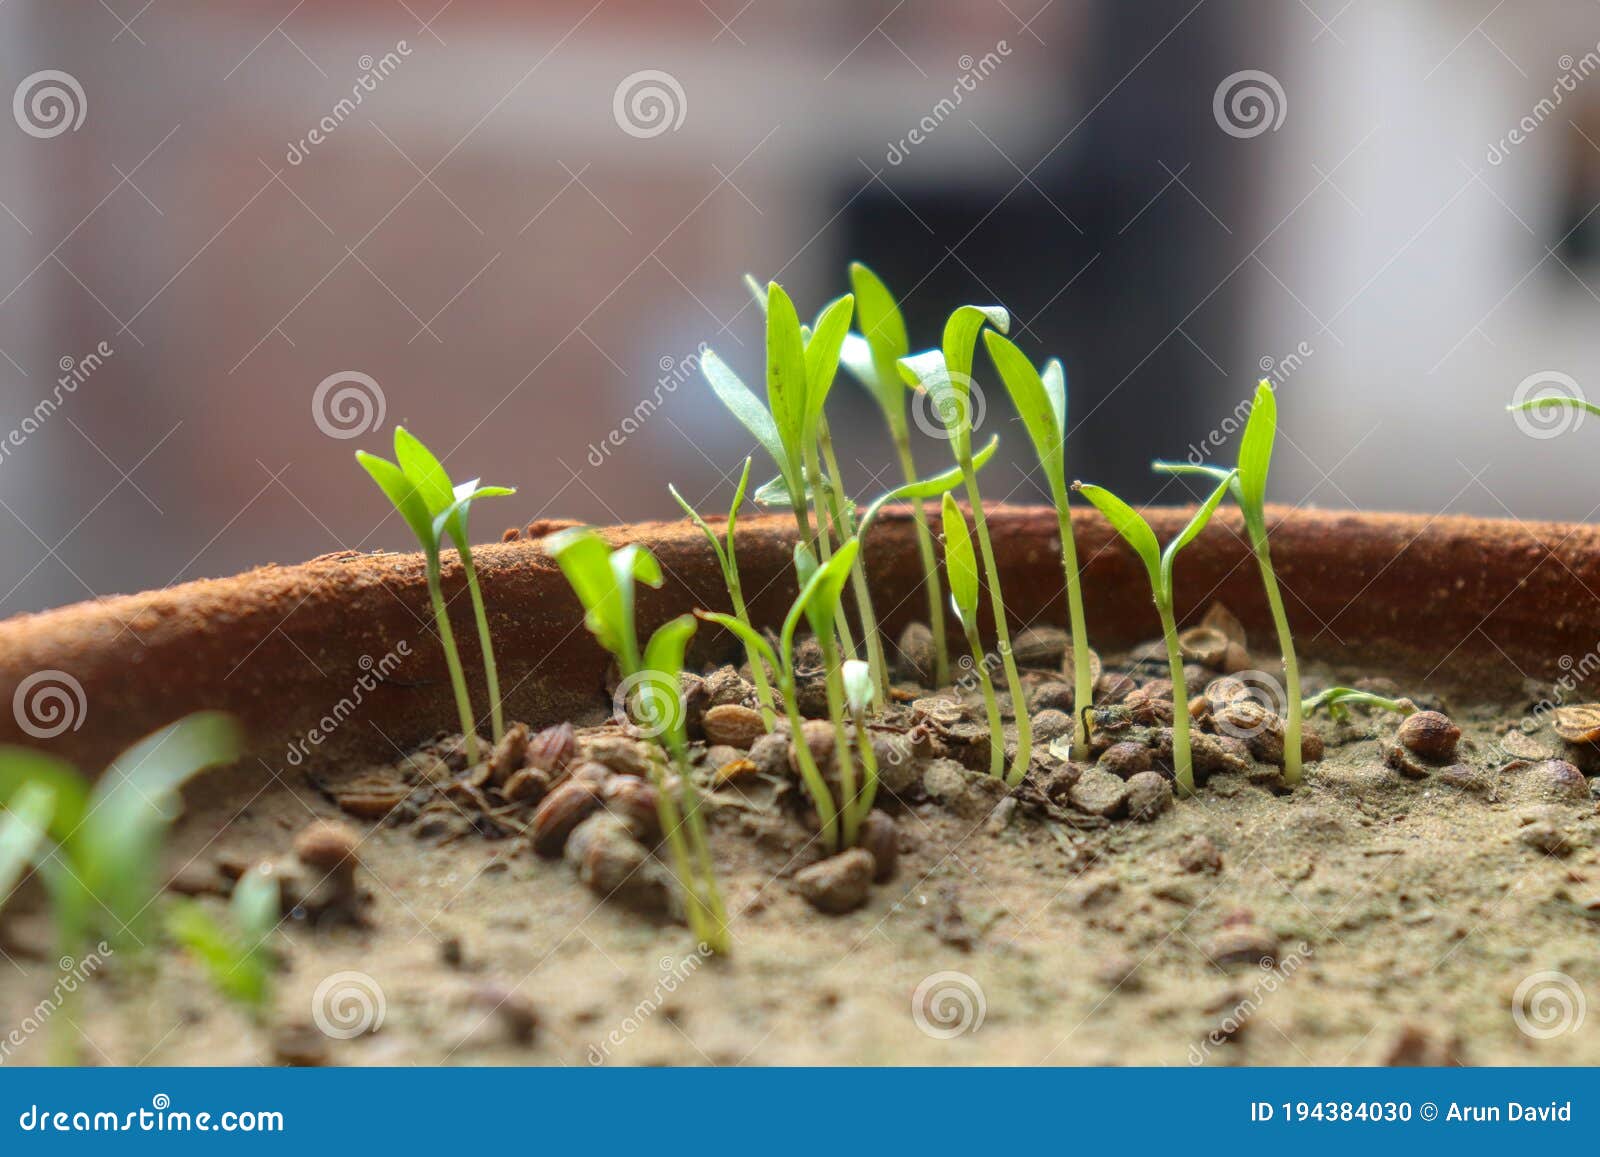 Germinación De Plantas Y Crecimiento De Semillas De Girasol Foto de archivo  - Imagen de germine, girasol: 194384030